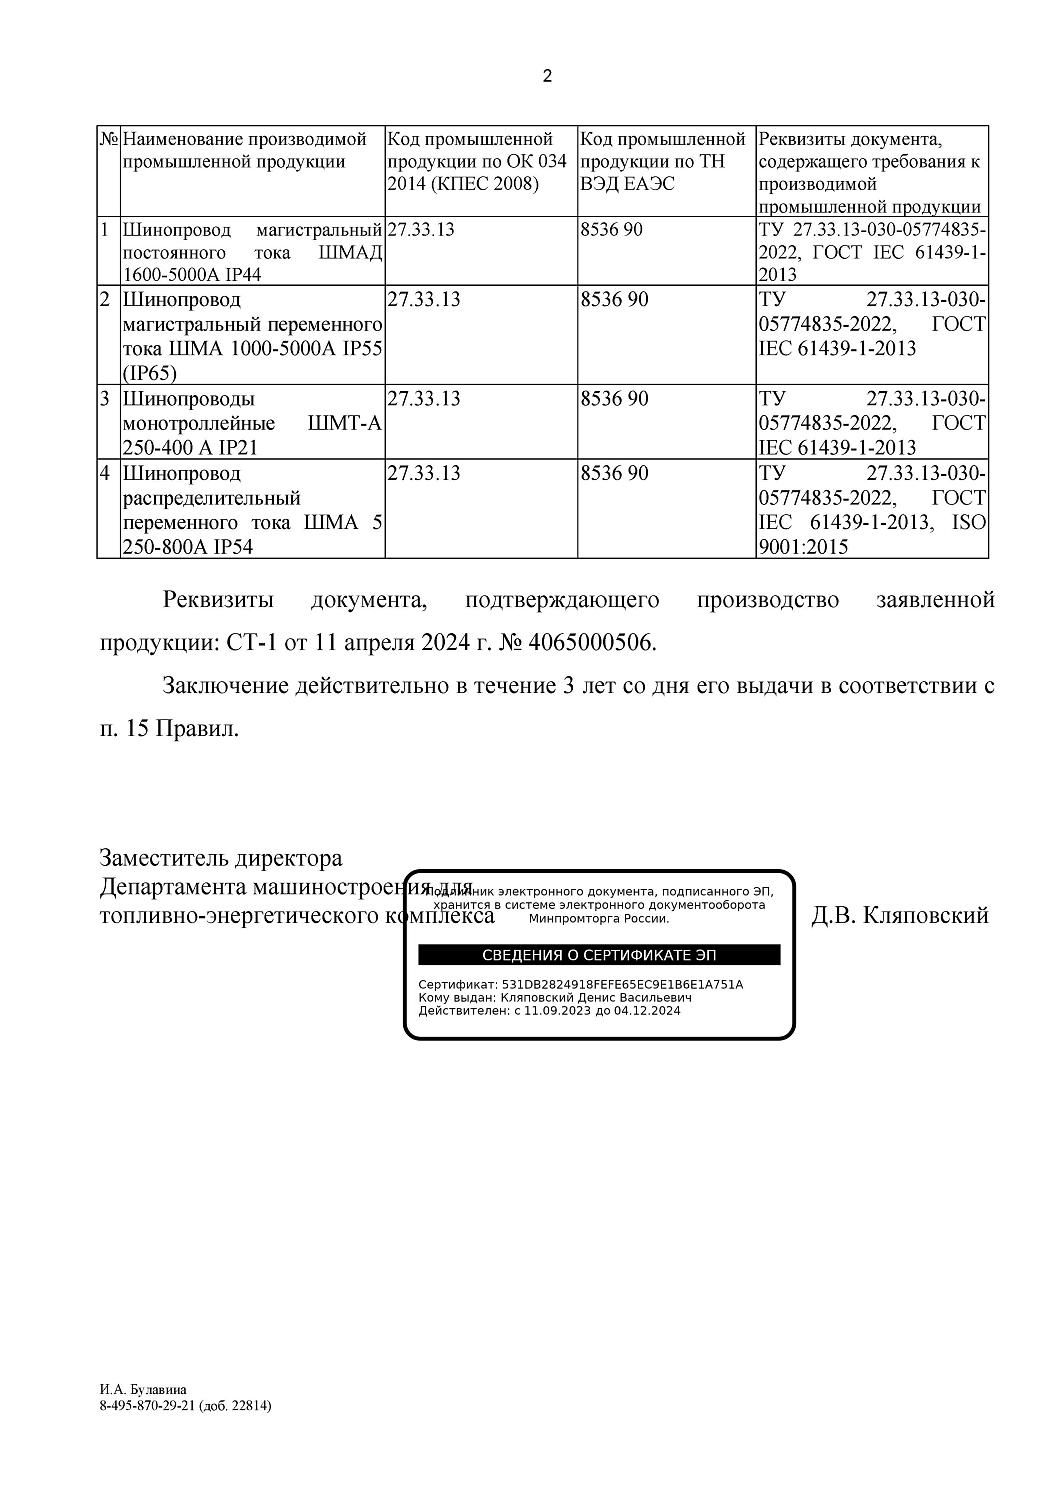 Завод «СОЭМИ» включен в реестр отечественных производителей Минпромторга РФ